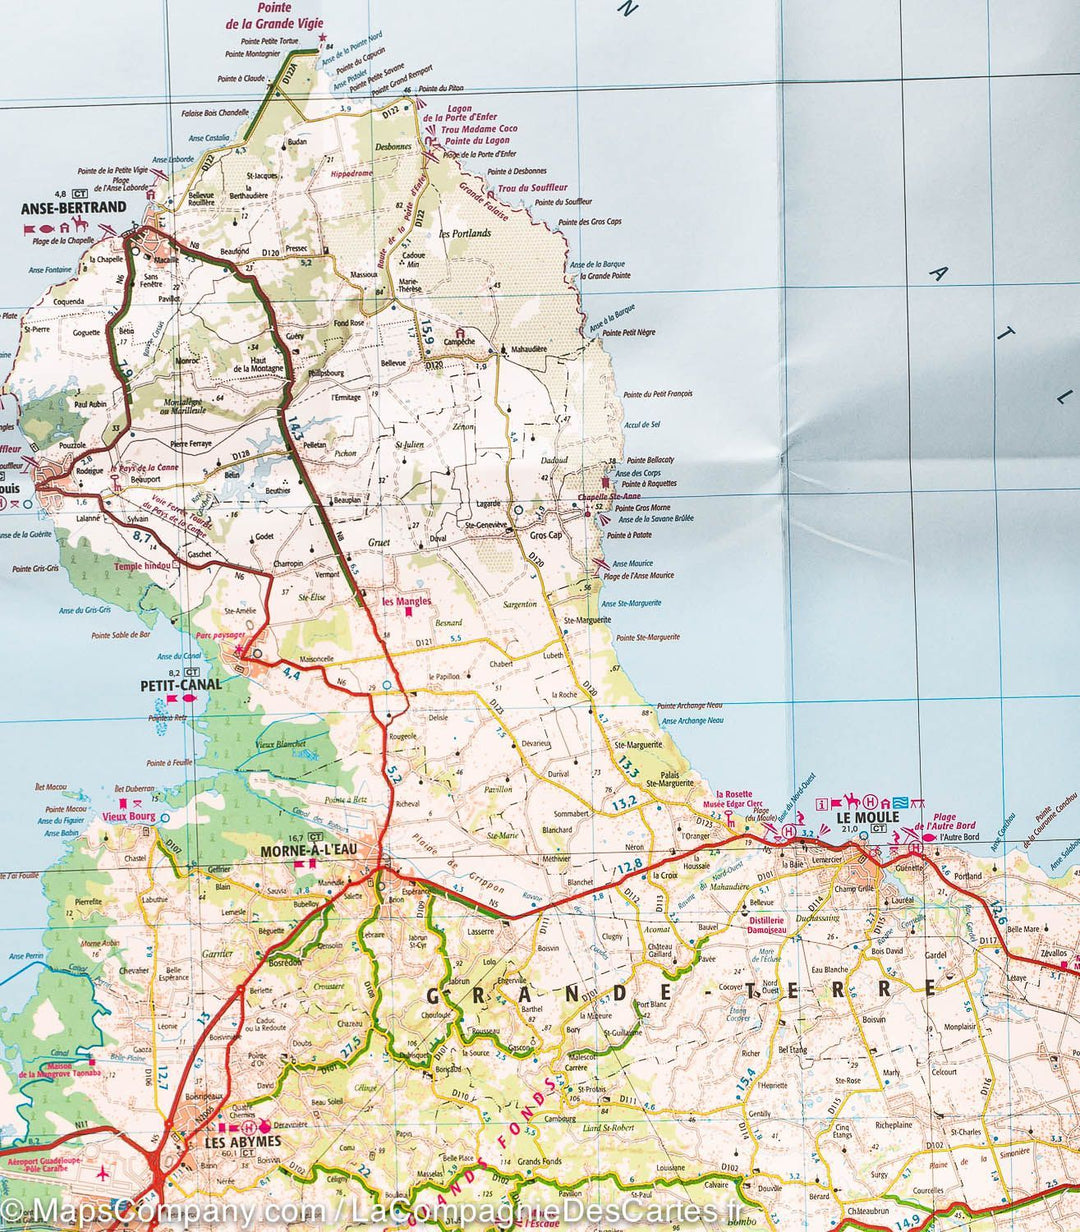 Carte détaillée - Guadeloupe, Saint Martin, Saint Barthélemy | IGN carte pliée IGN 